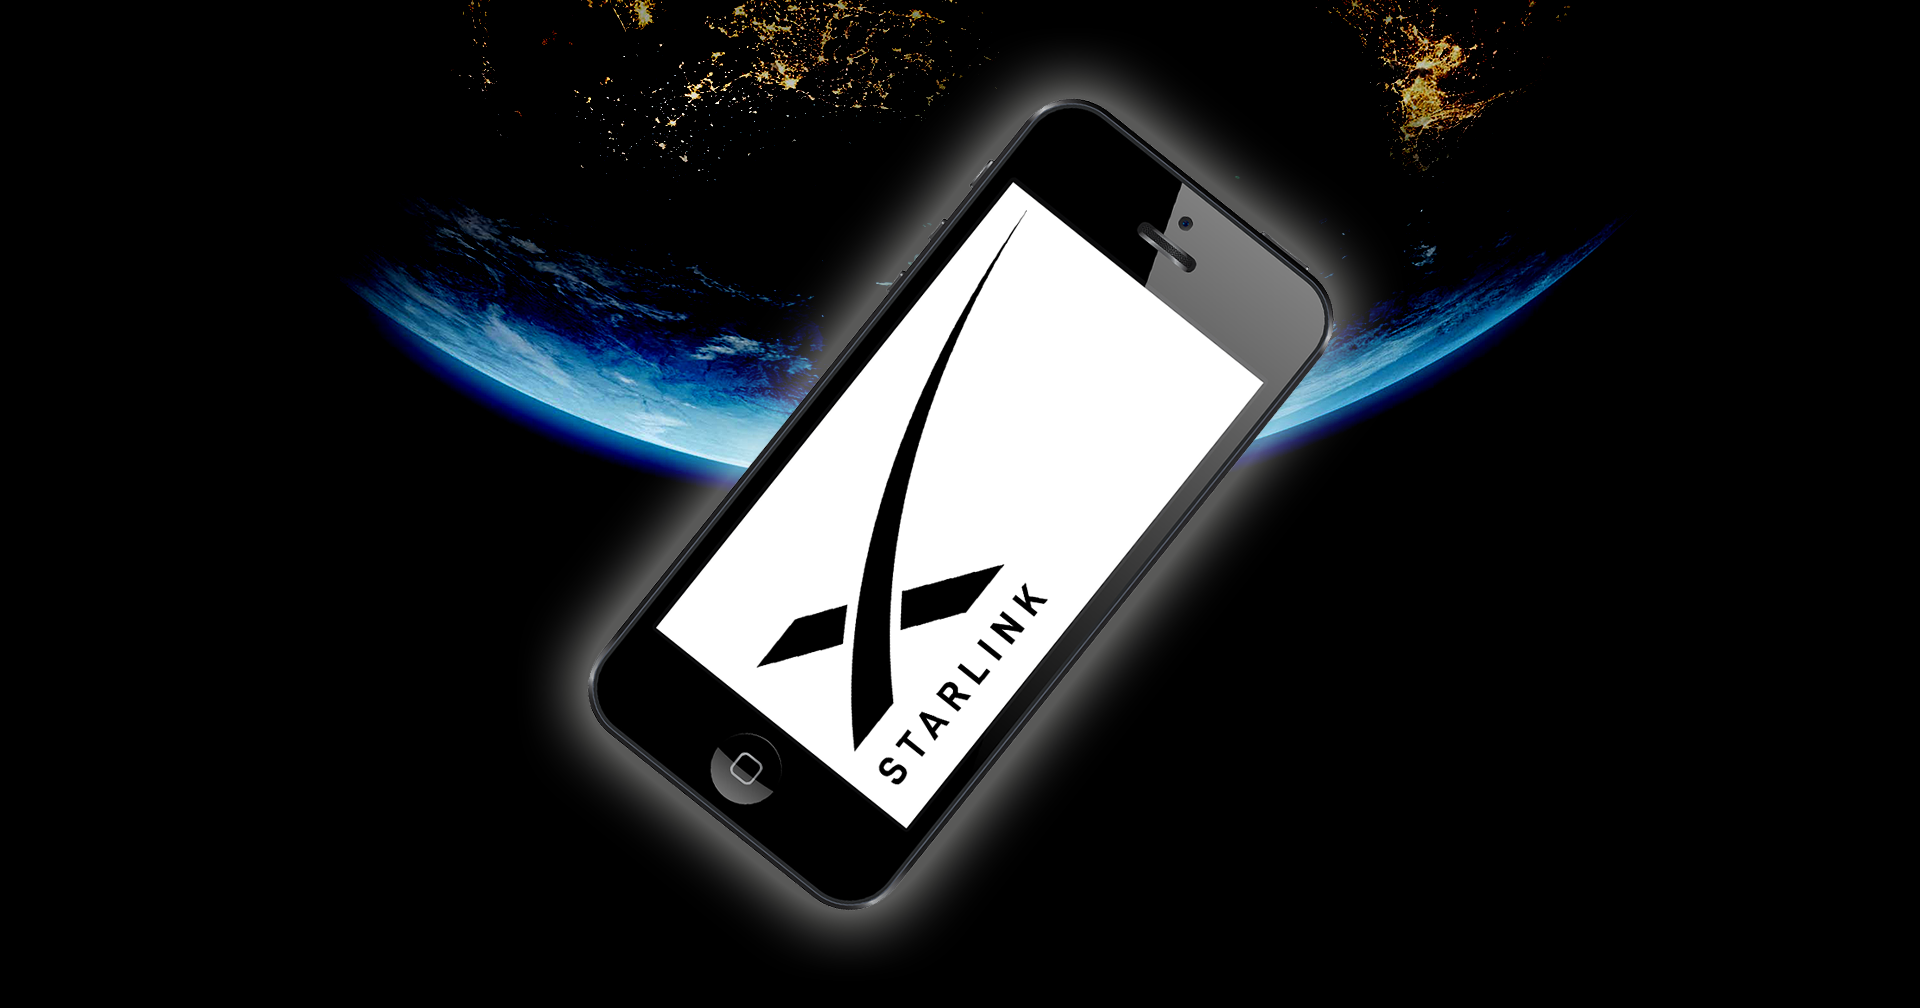 SpaceX จะทดสอบบริการสื่อสารดาวเทียม Starlink ไปยังโทรศัพท์มือถือในปีนี้